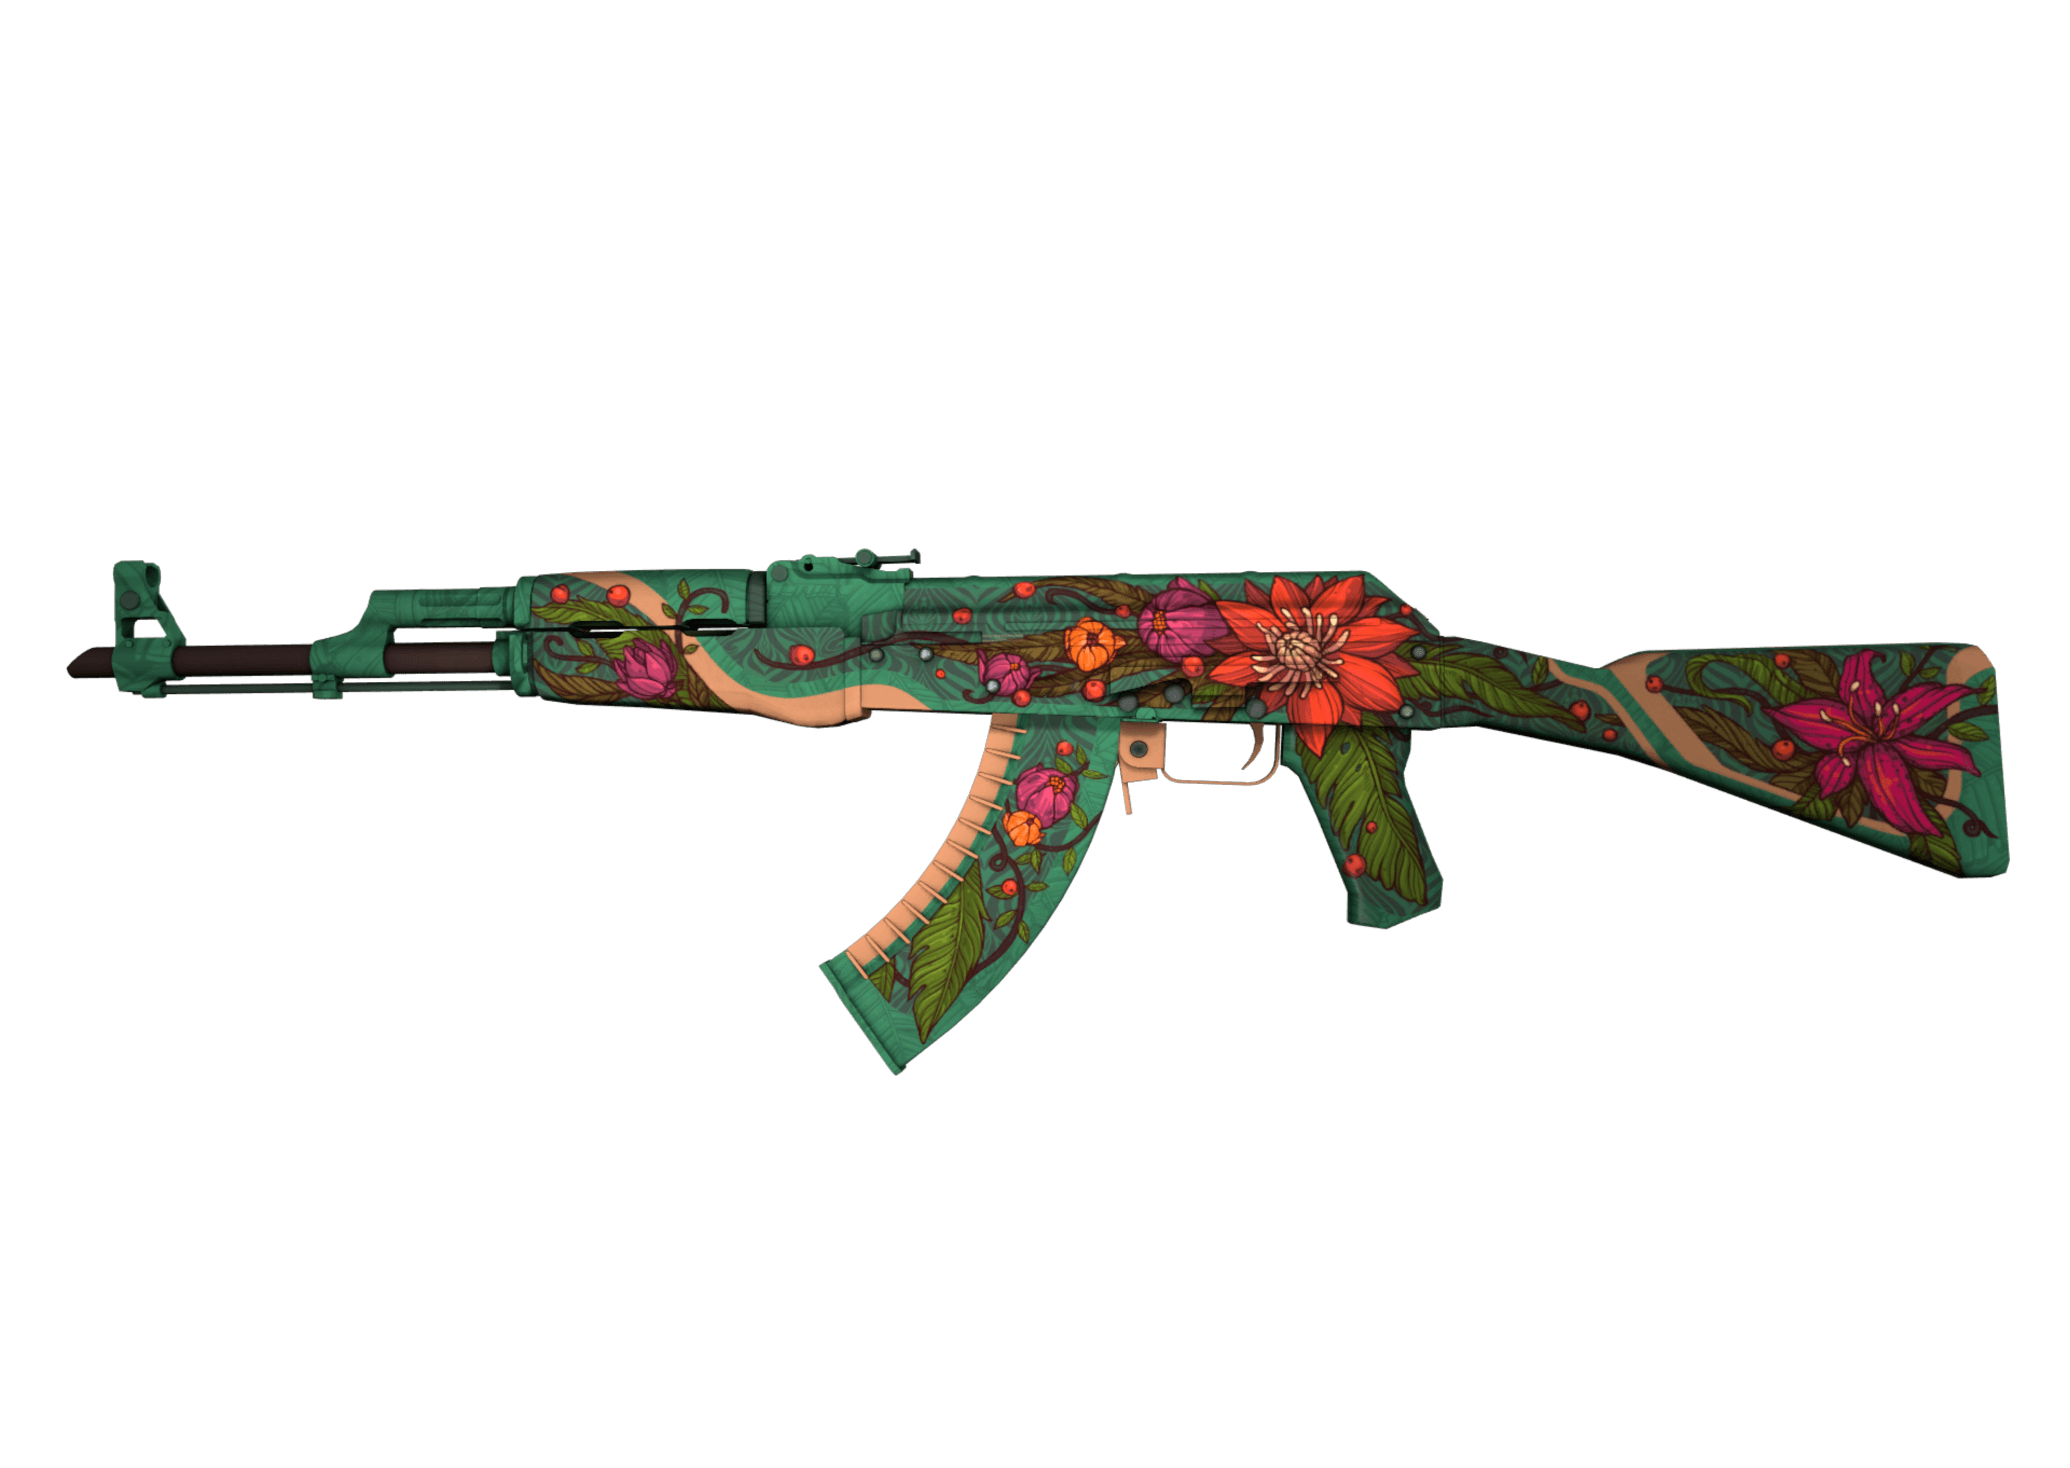  Buy cheap CSGO items: AK-47